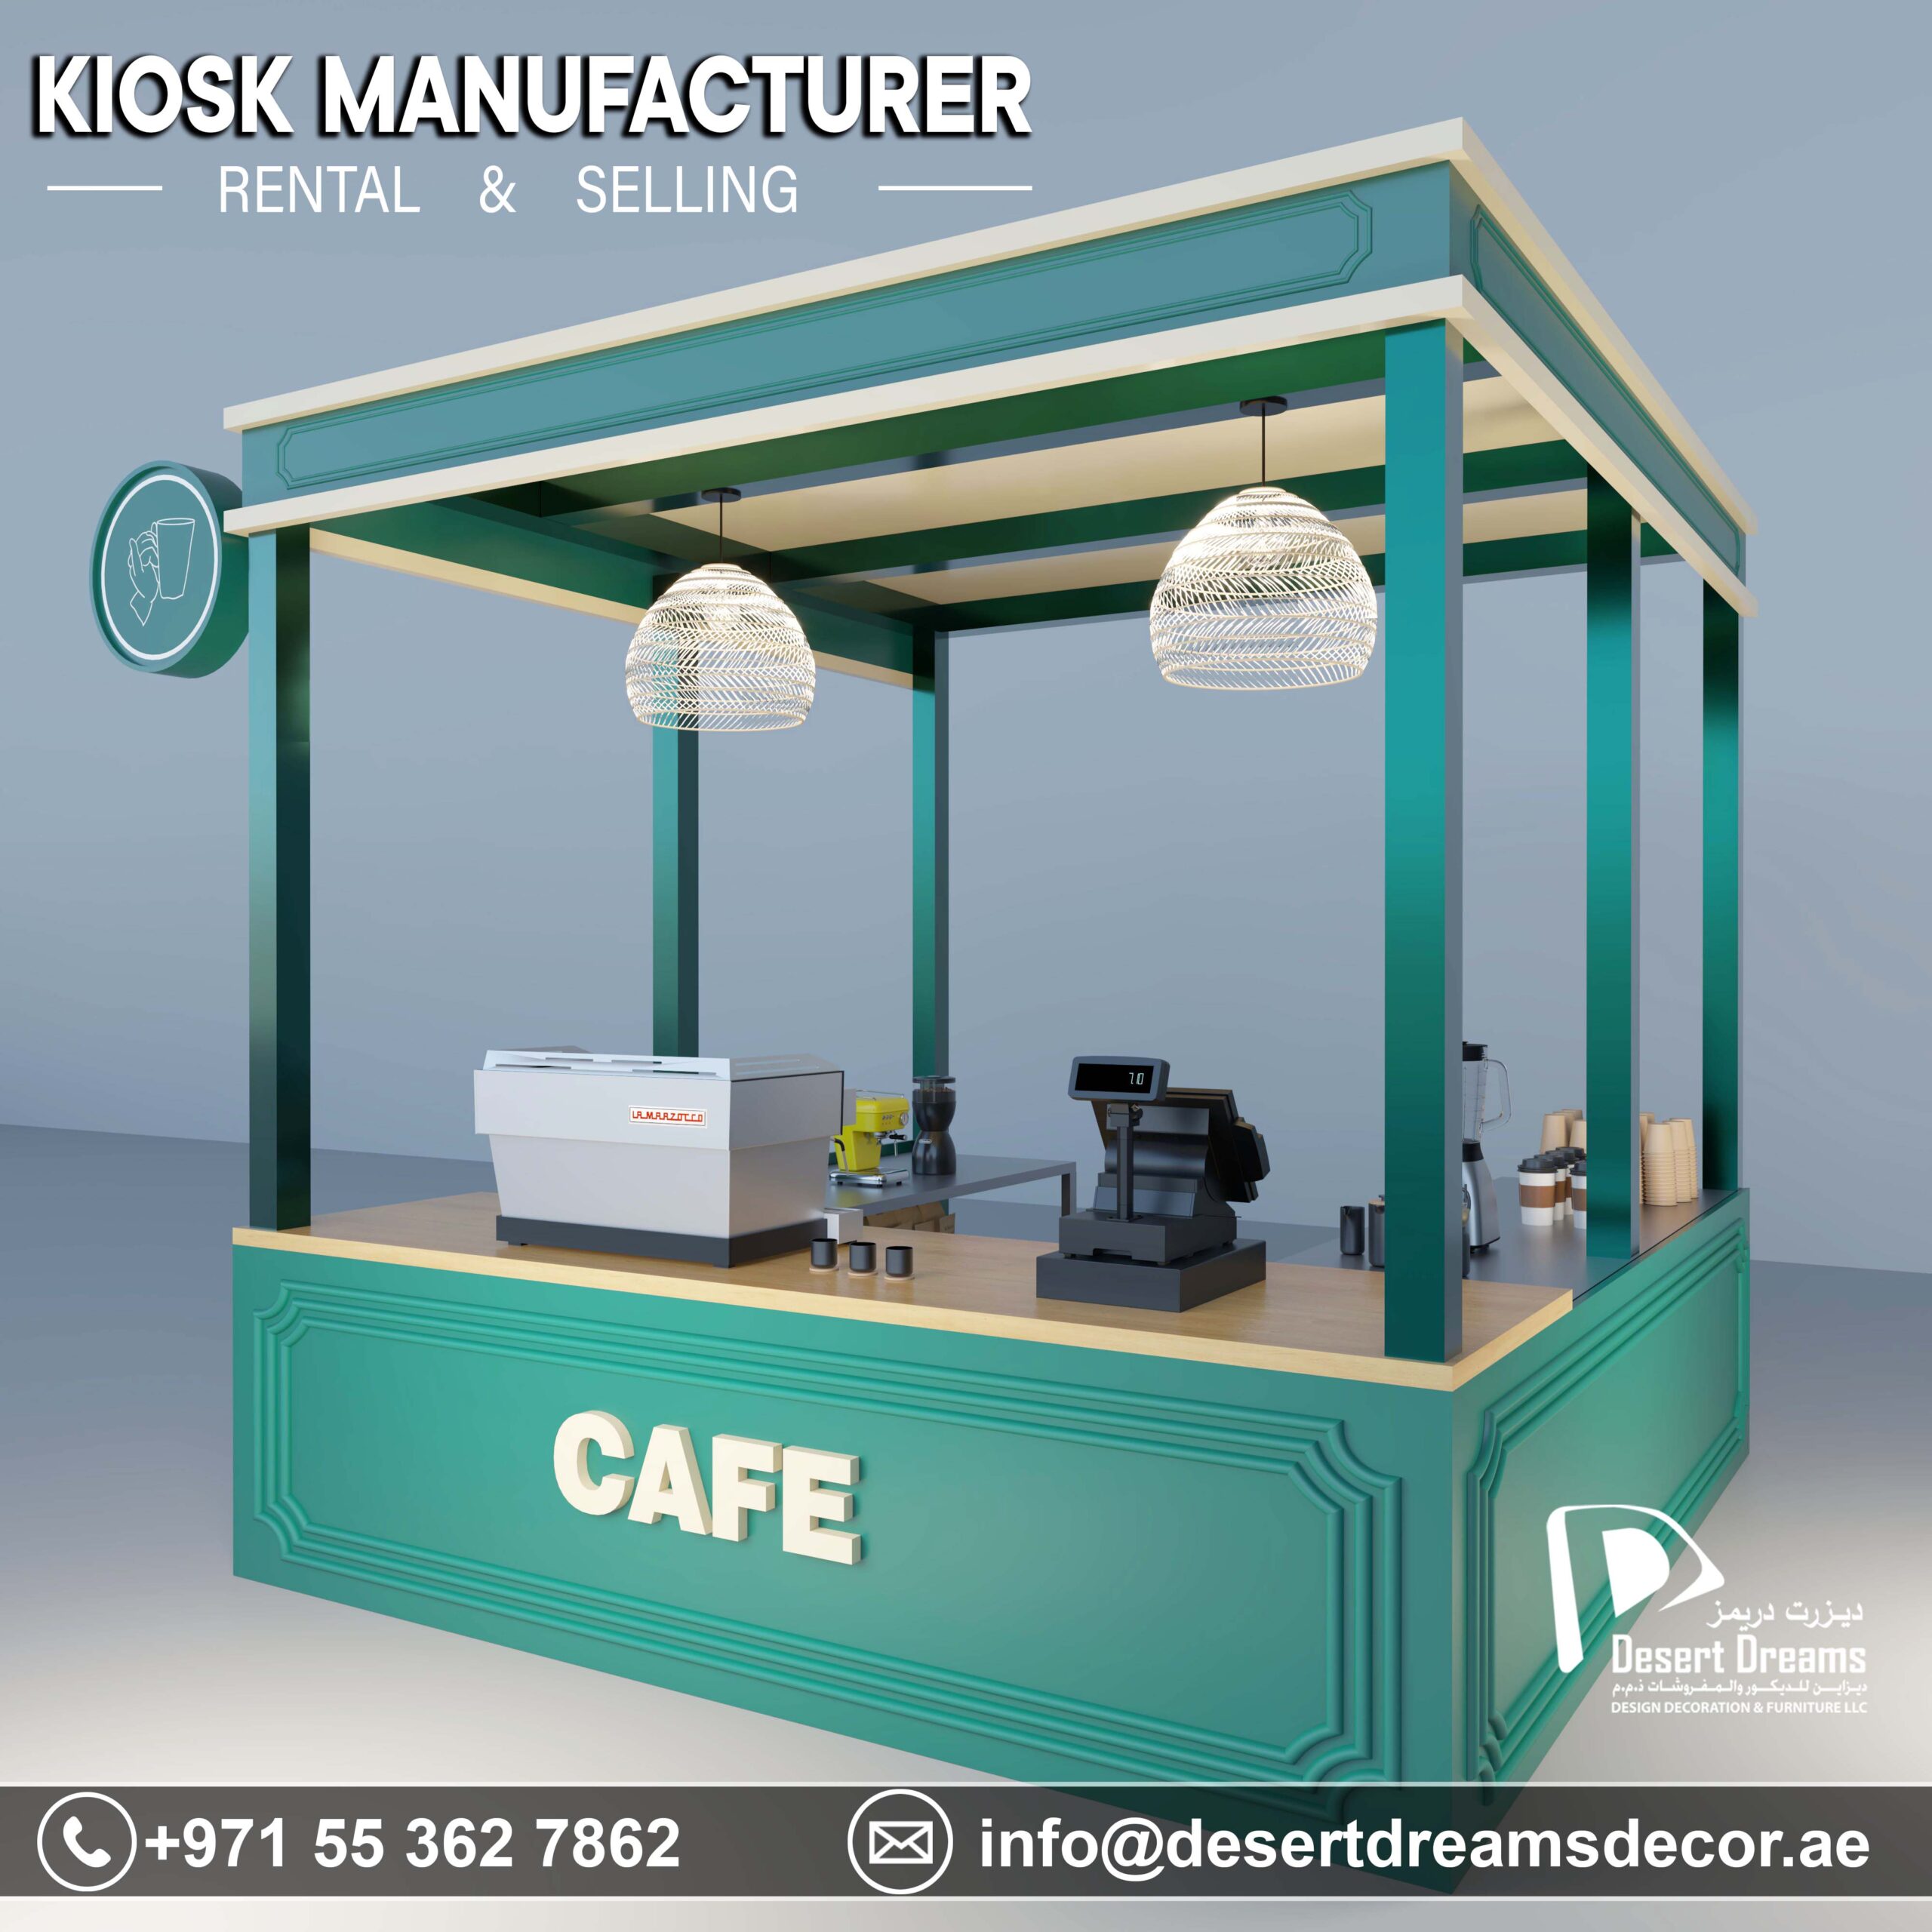 Kiosk Manufacturer in UAE-1.jpg